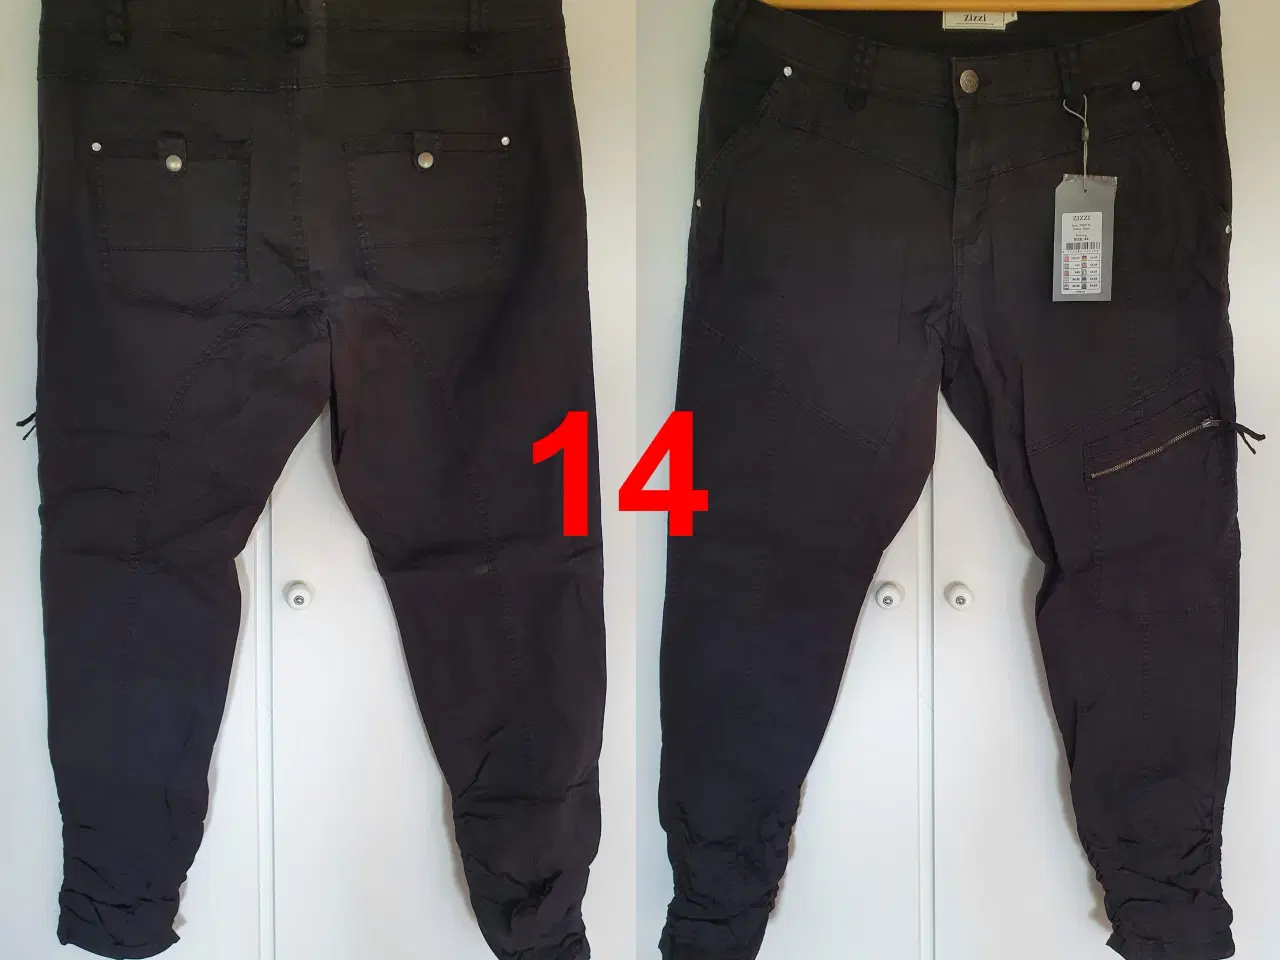 Billede 3 - Bukser / jeans i stakkevis til ingen penge - DEL 3